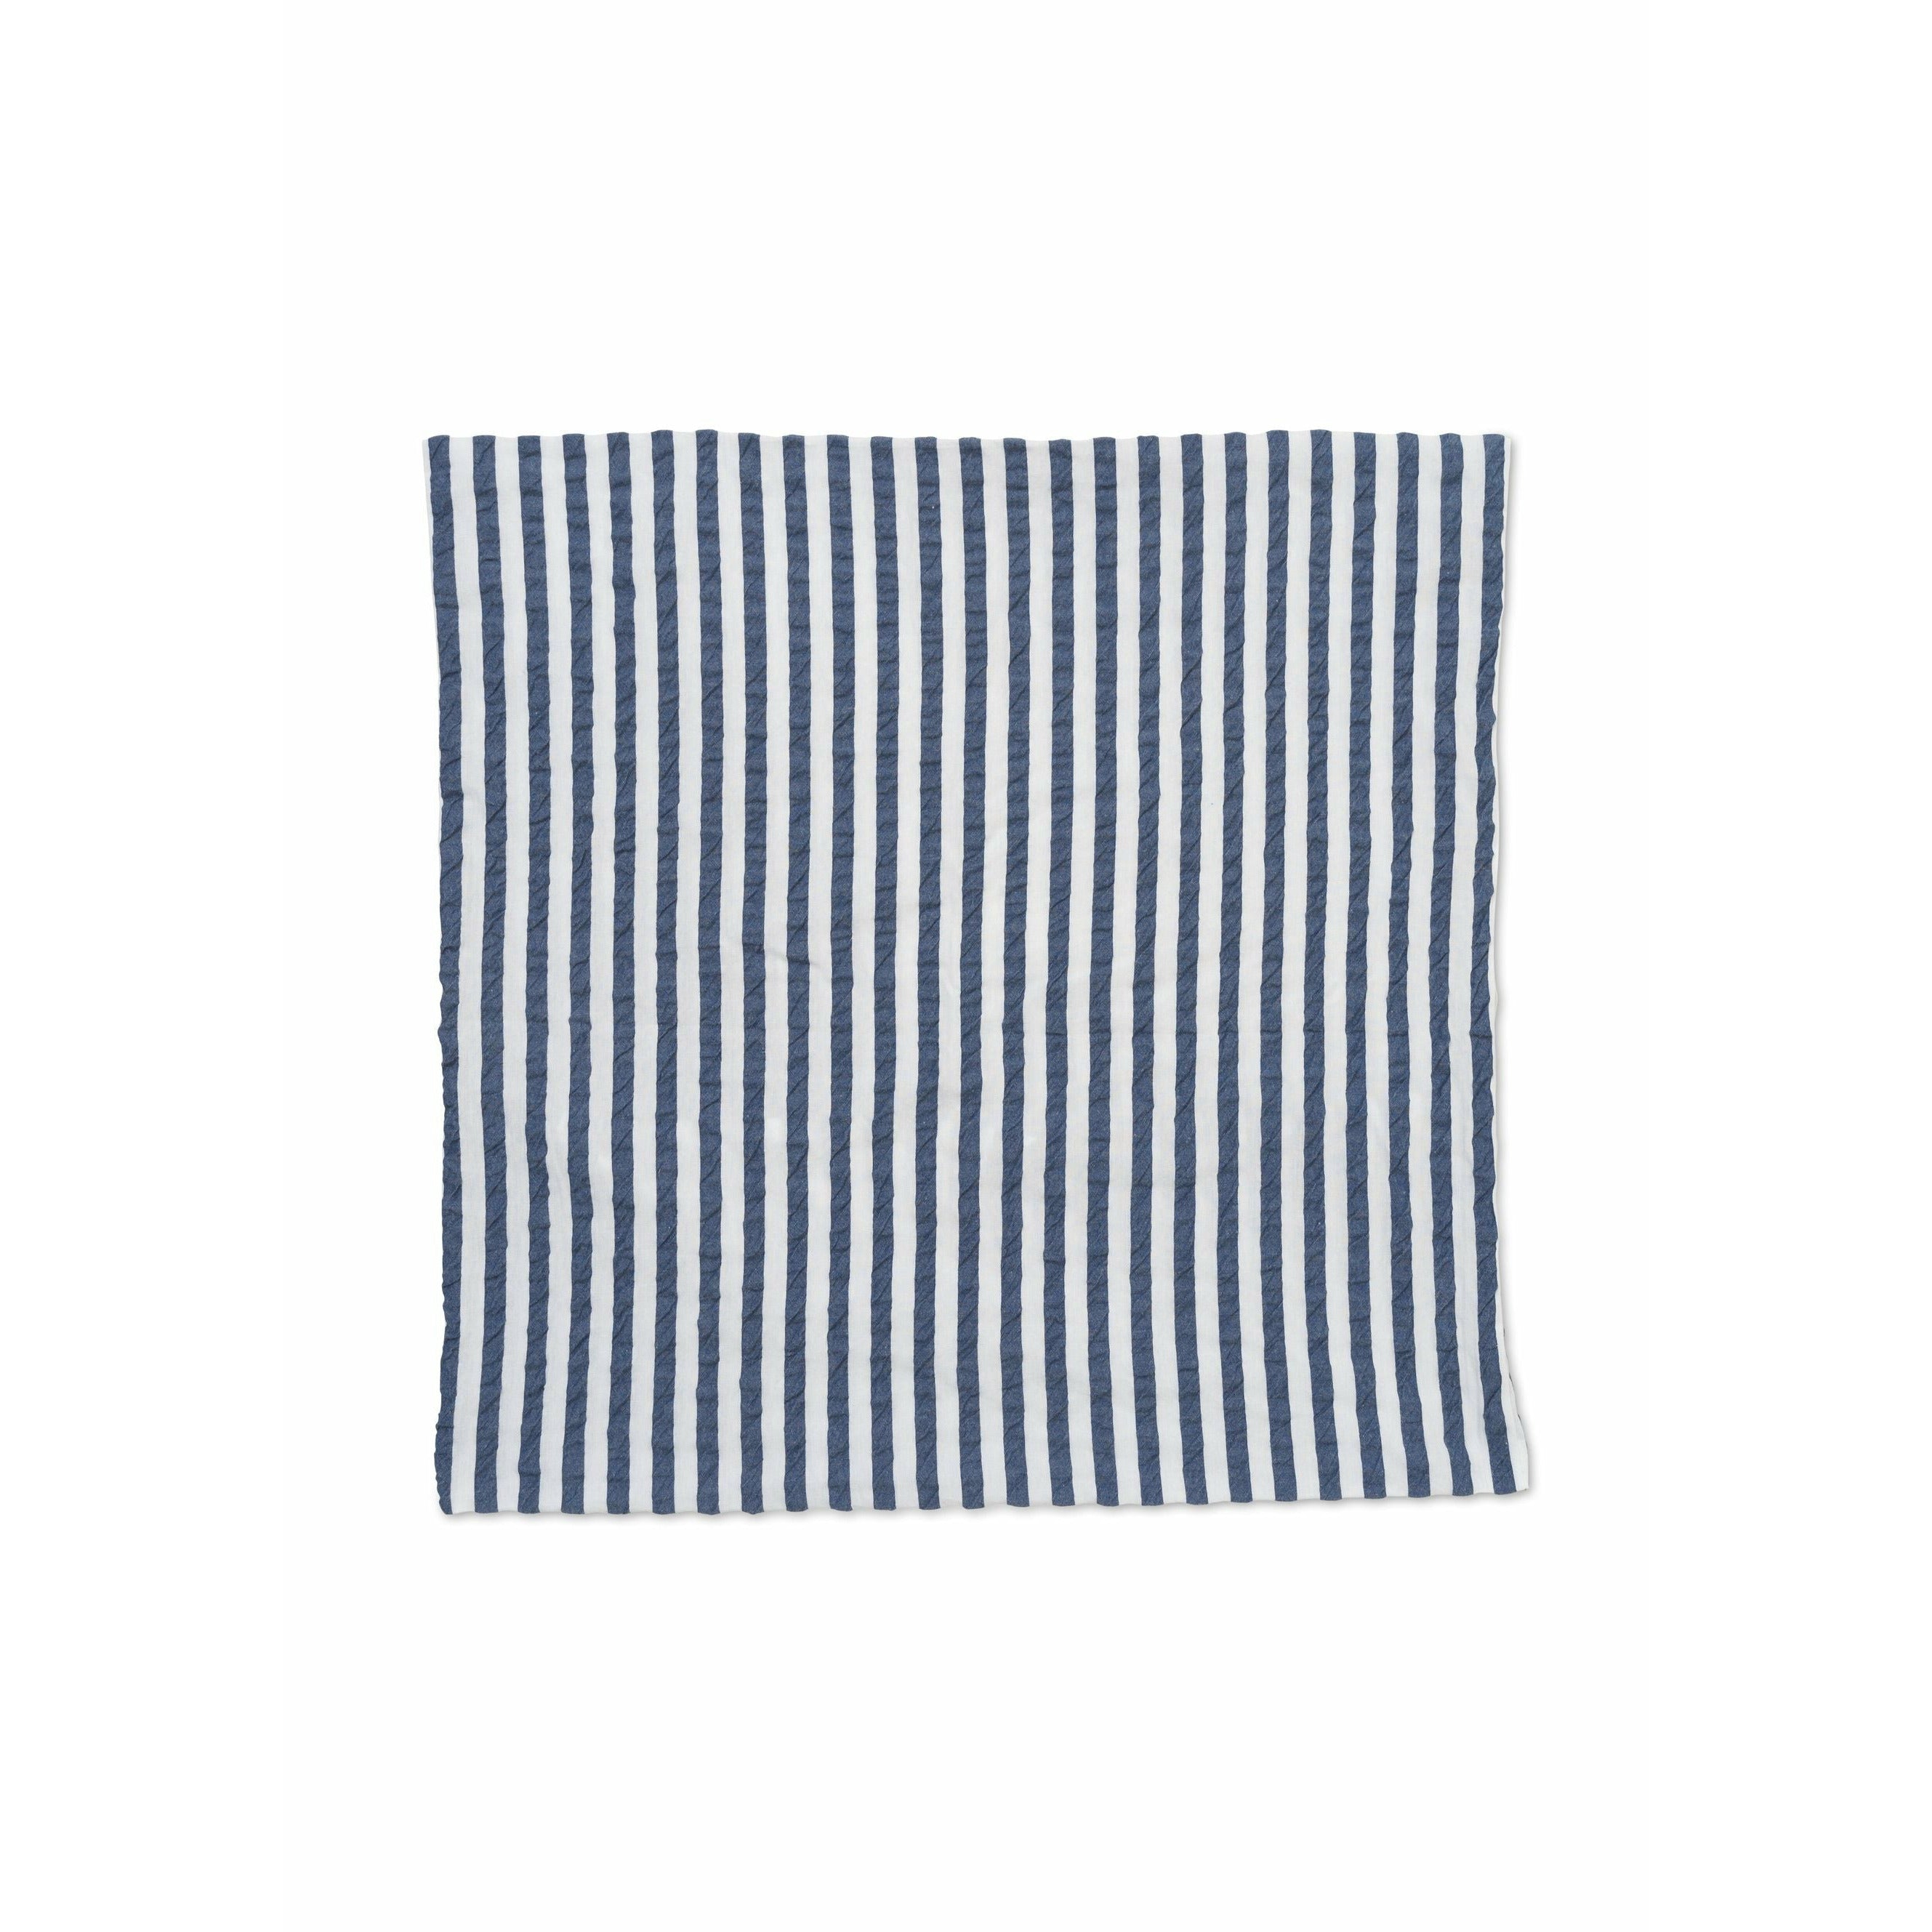 JUNA Bæk & Bølge Lines Escasa de almohada de 63x60 cm, azul oscuro/blanco